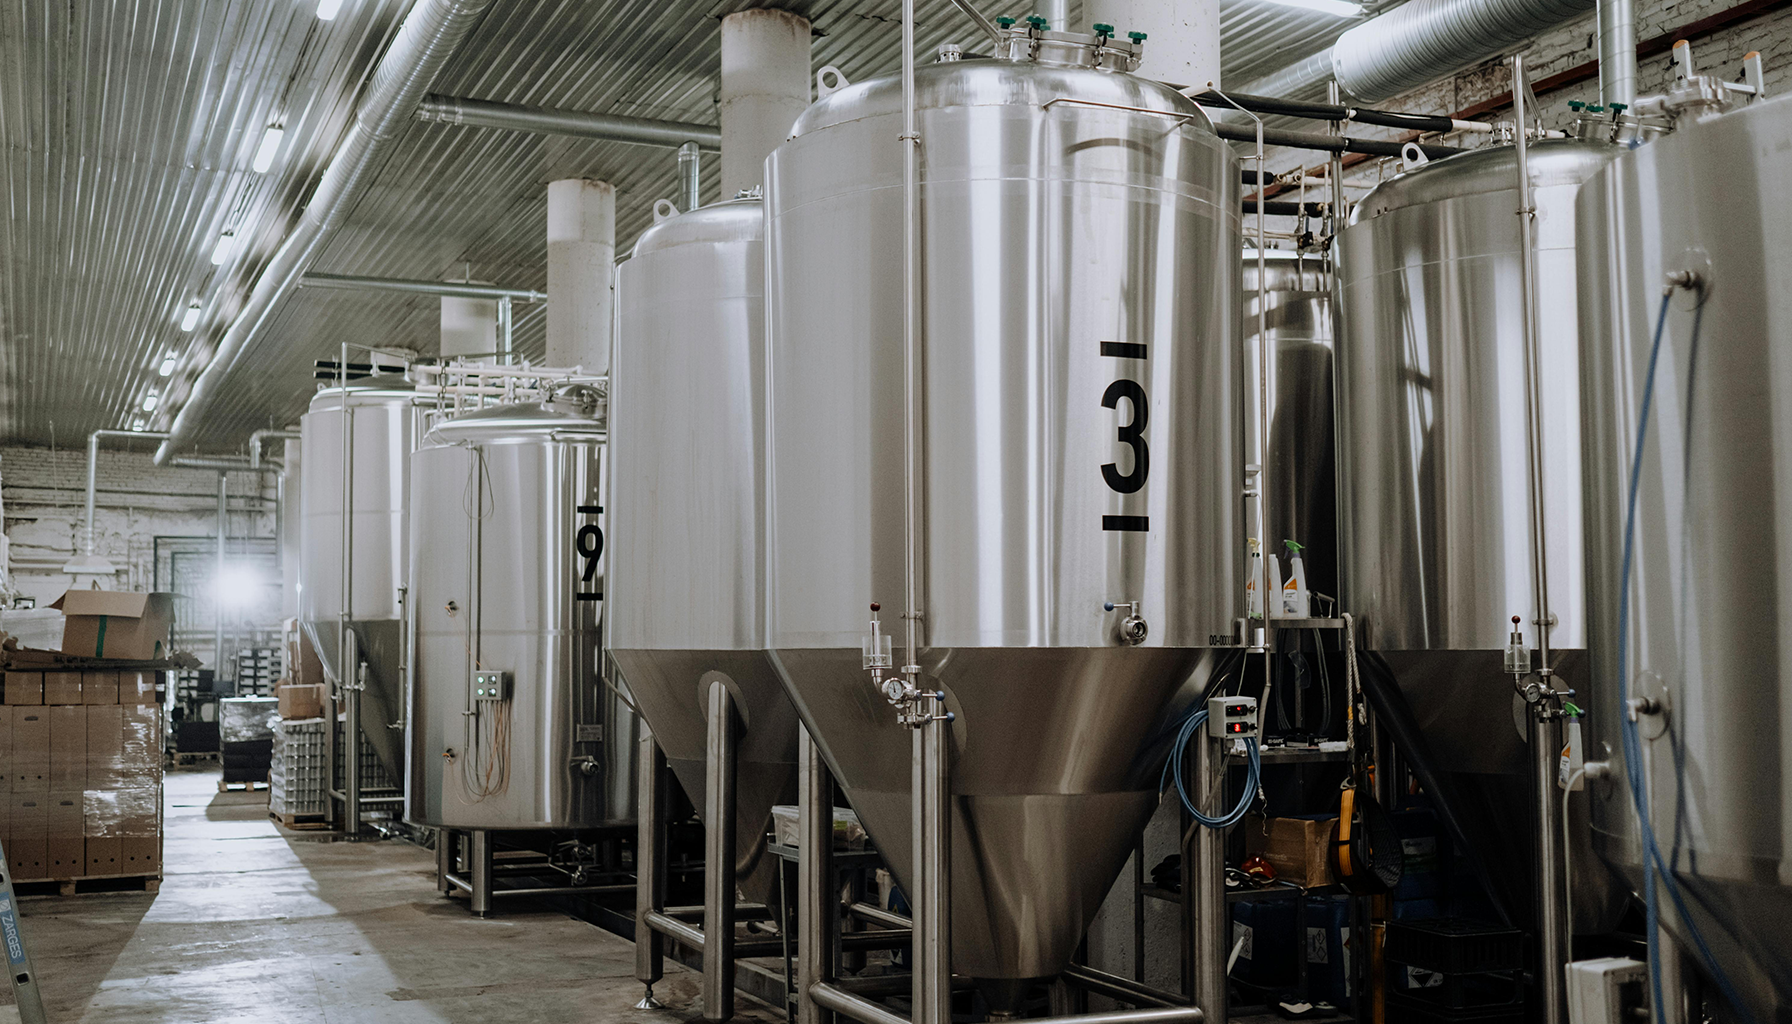 Amélioration de la qualité du processus de fermentation grâce à des capteurs d'oxygène en zircone